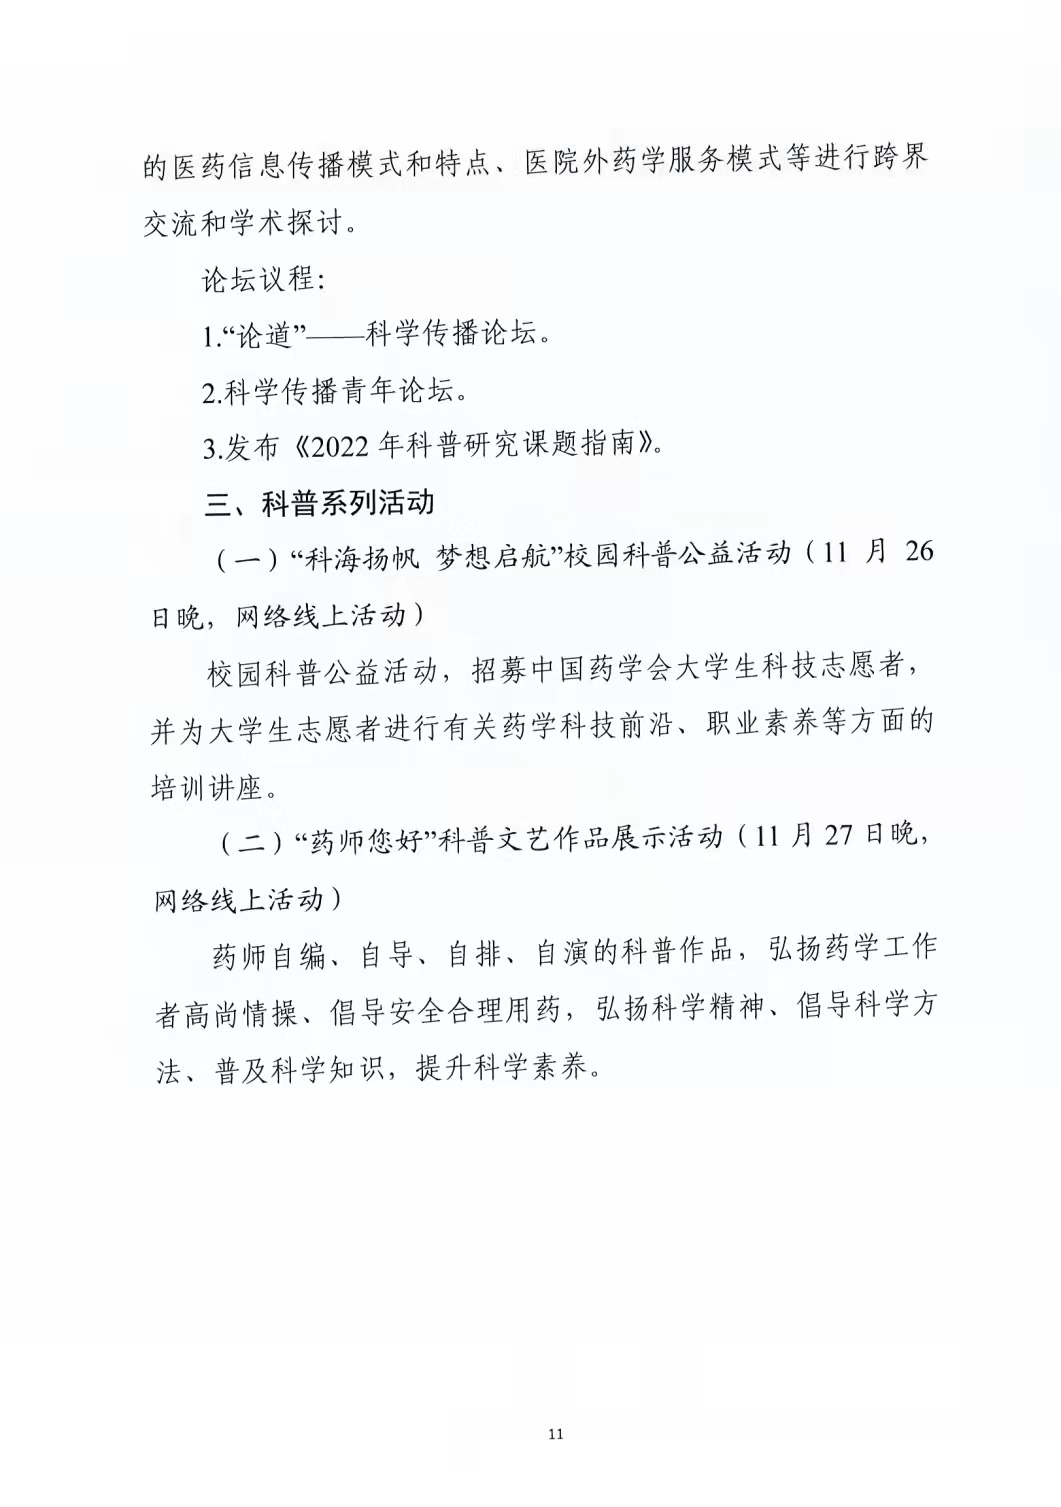 关于举办中国药学会第二十一届中国药师周的通知（第二轮）(图11)